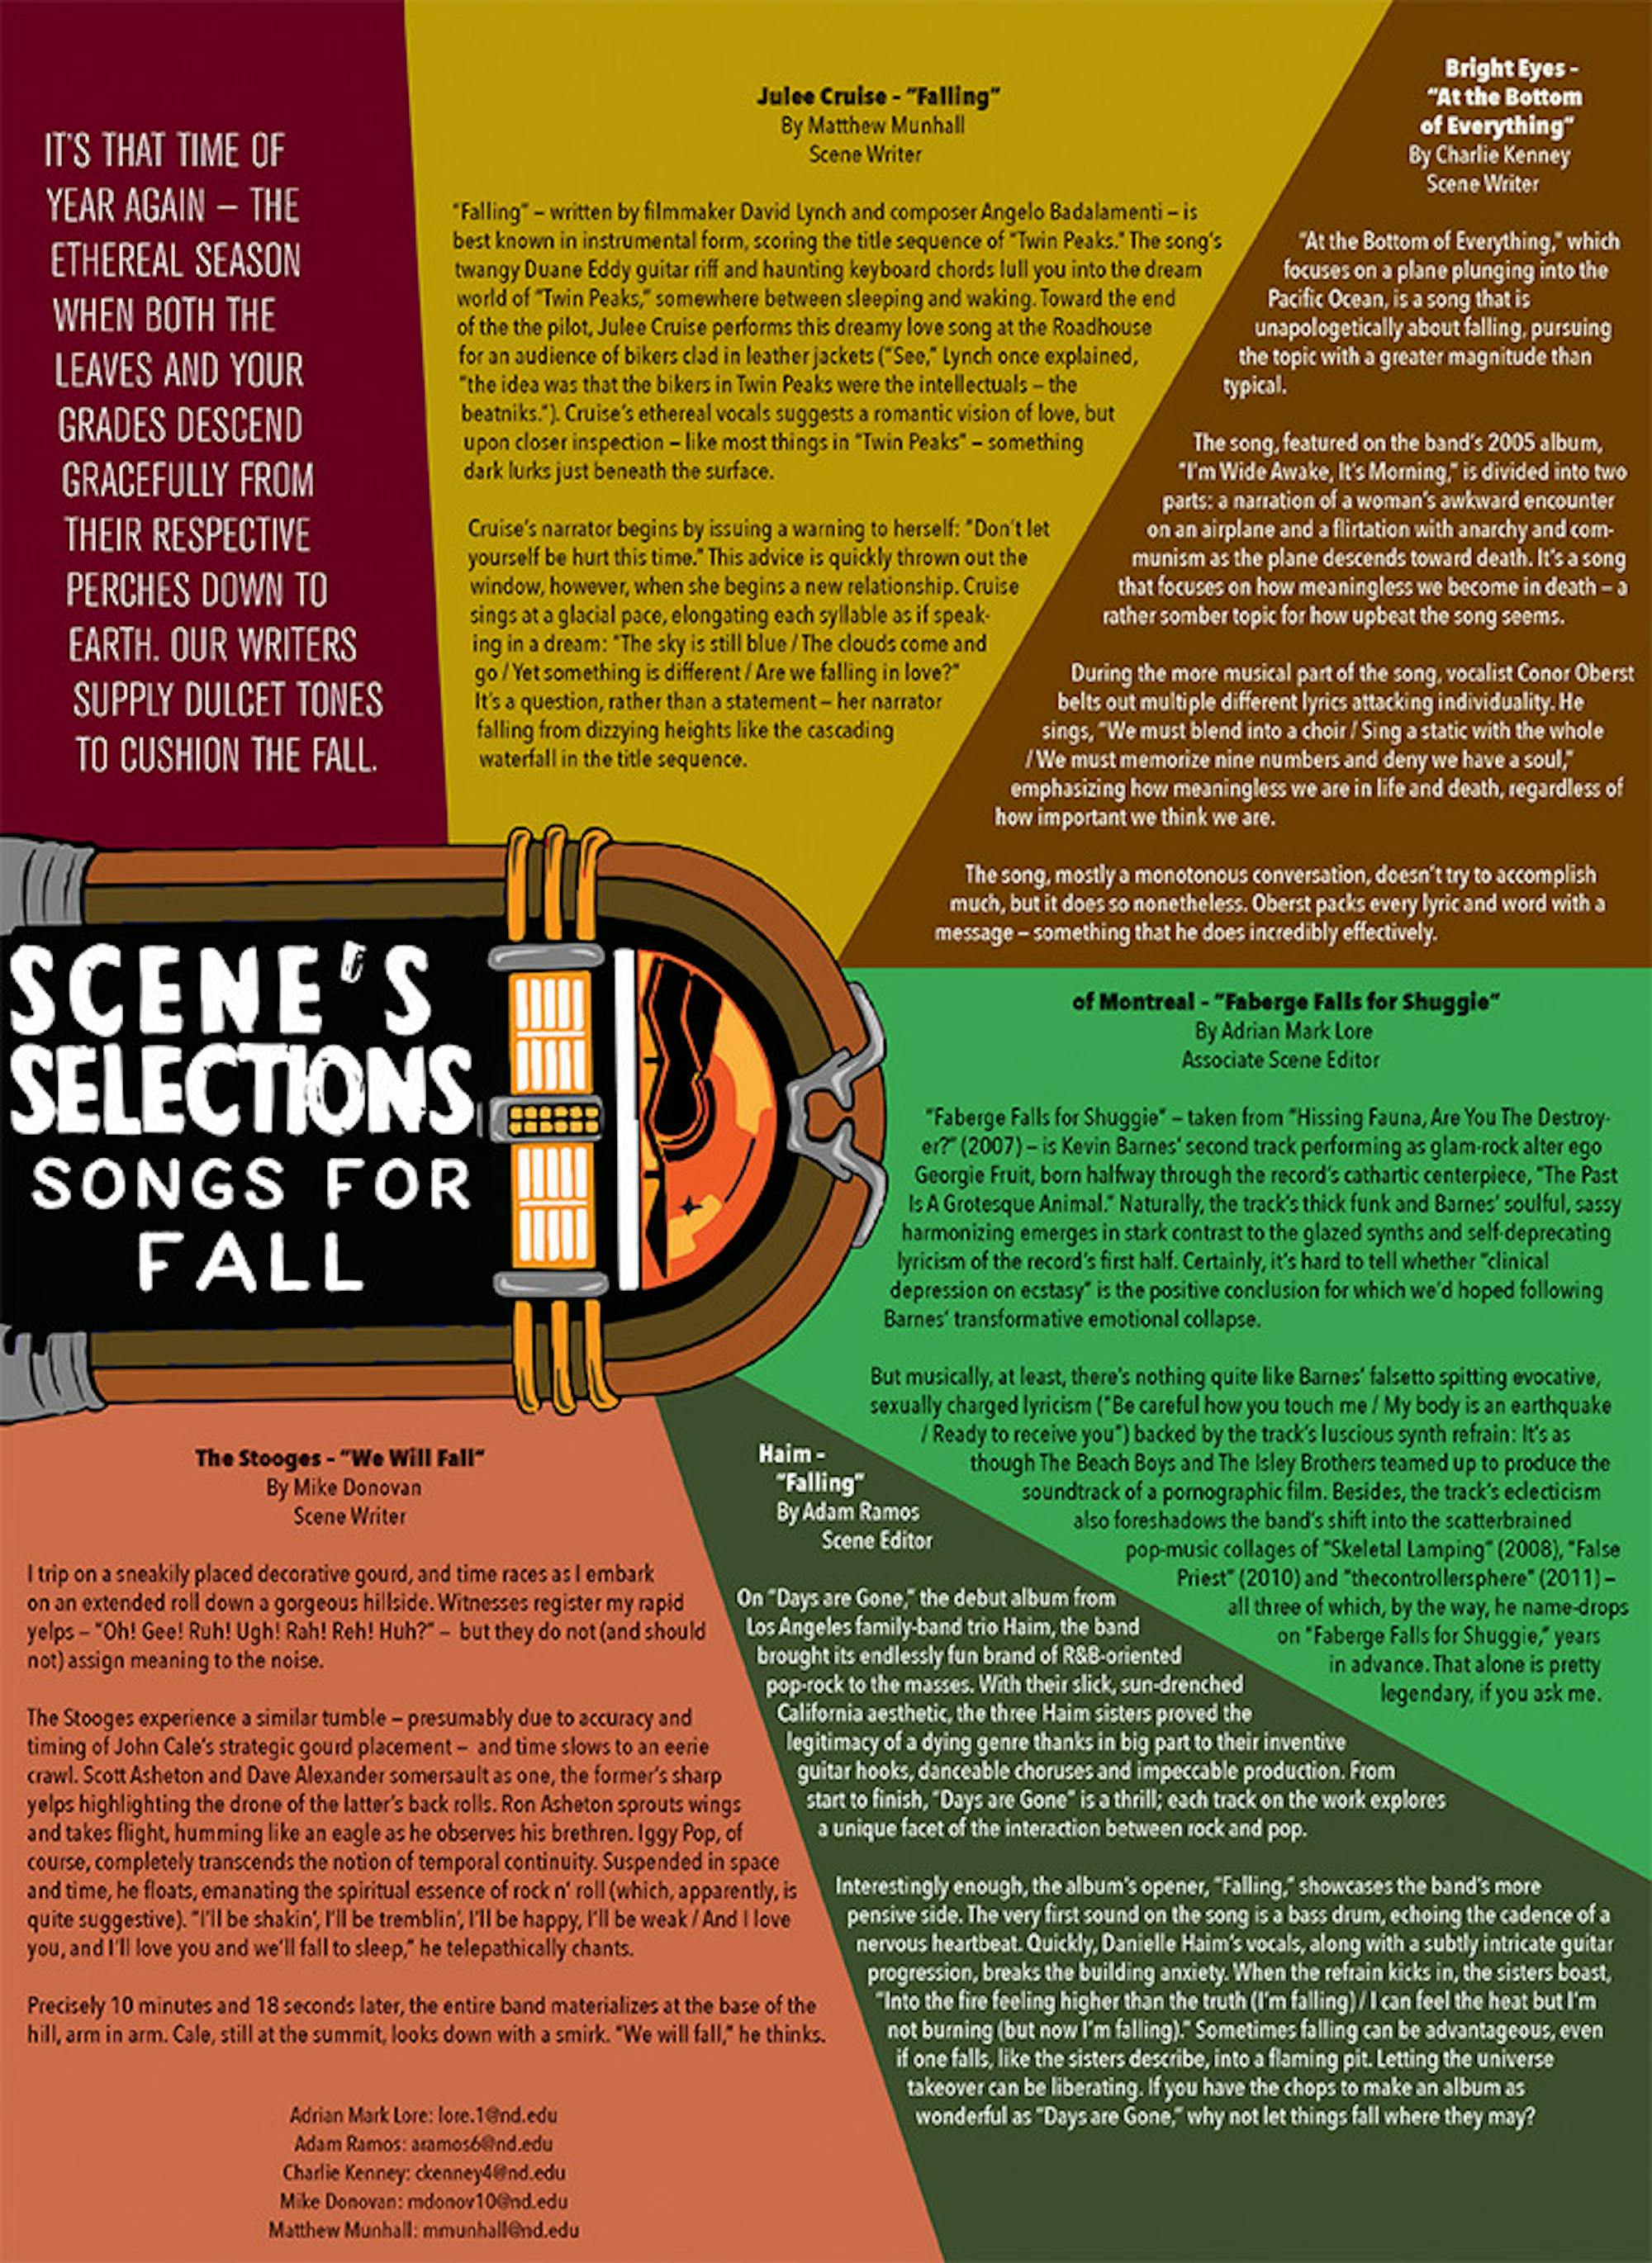 scene selections web